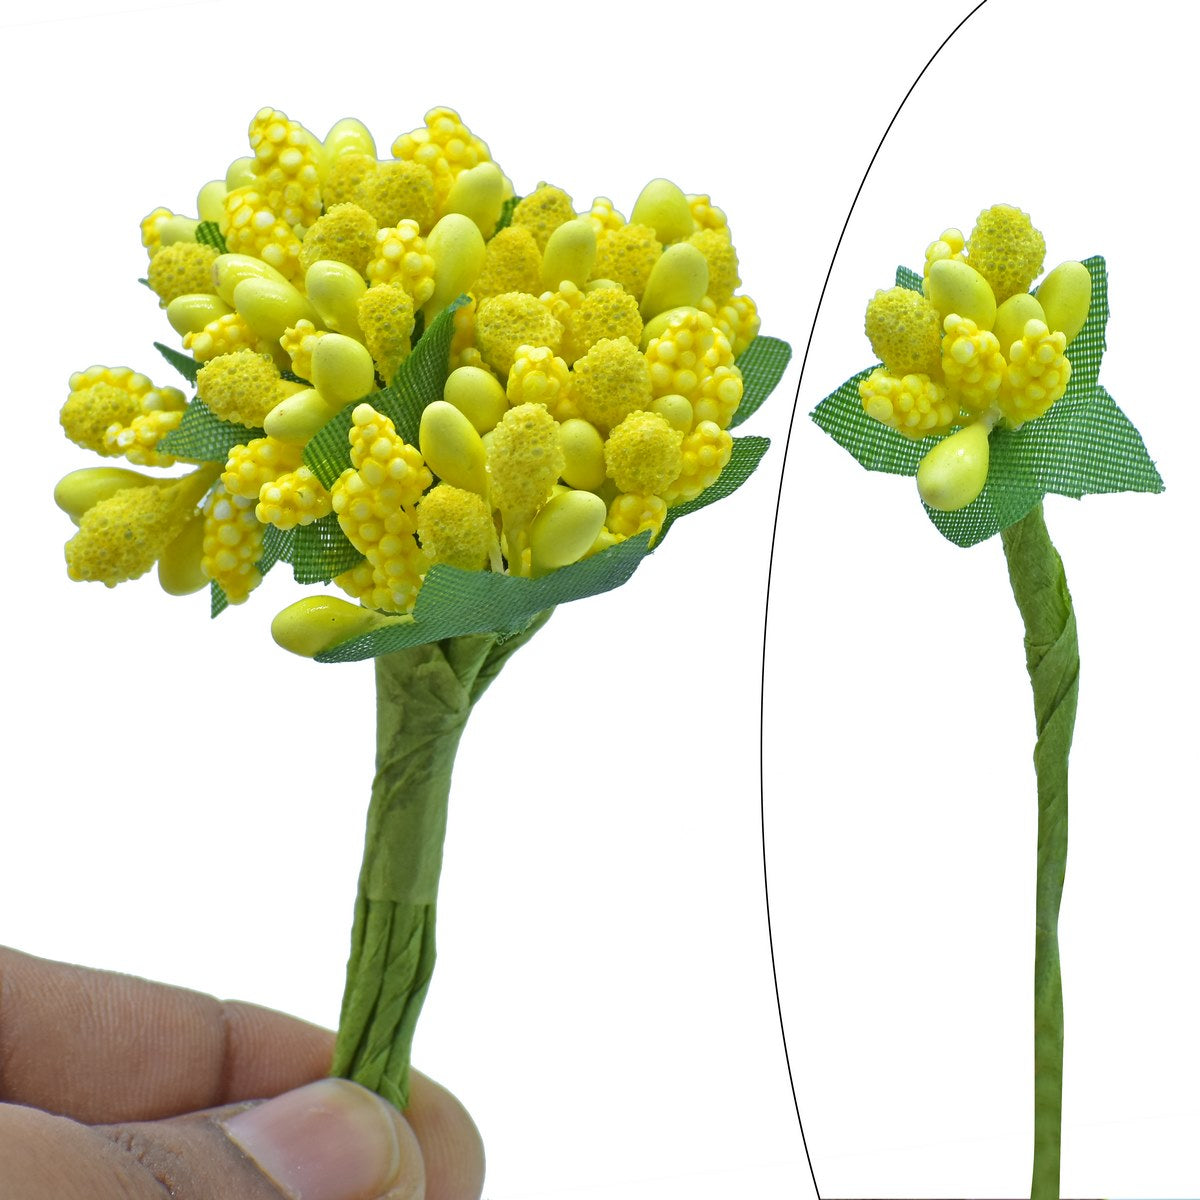 jags-mumbai Artificial Flower Artificial Flower pollens 144 Pics Yellow